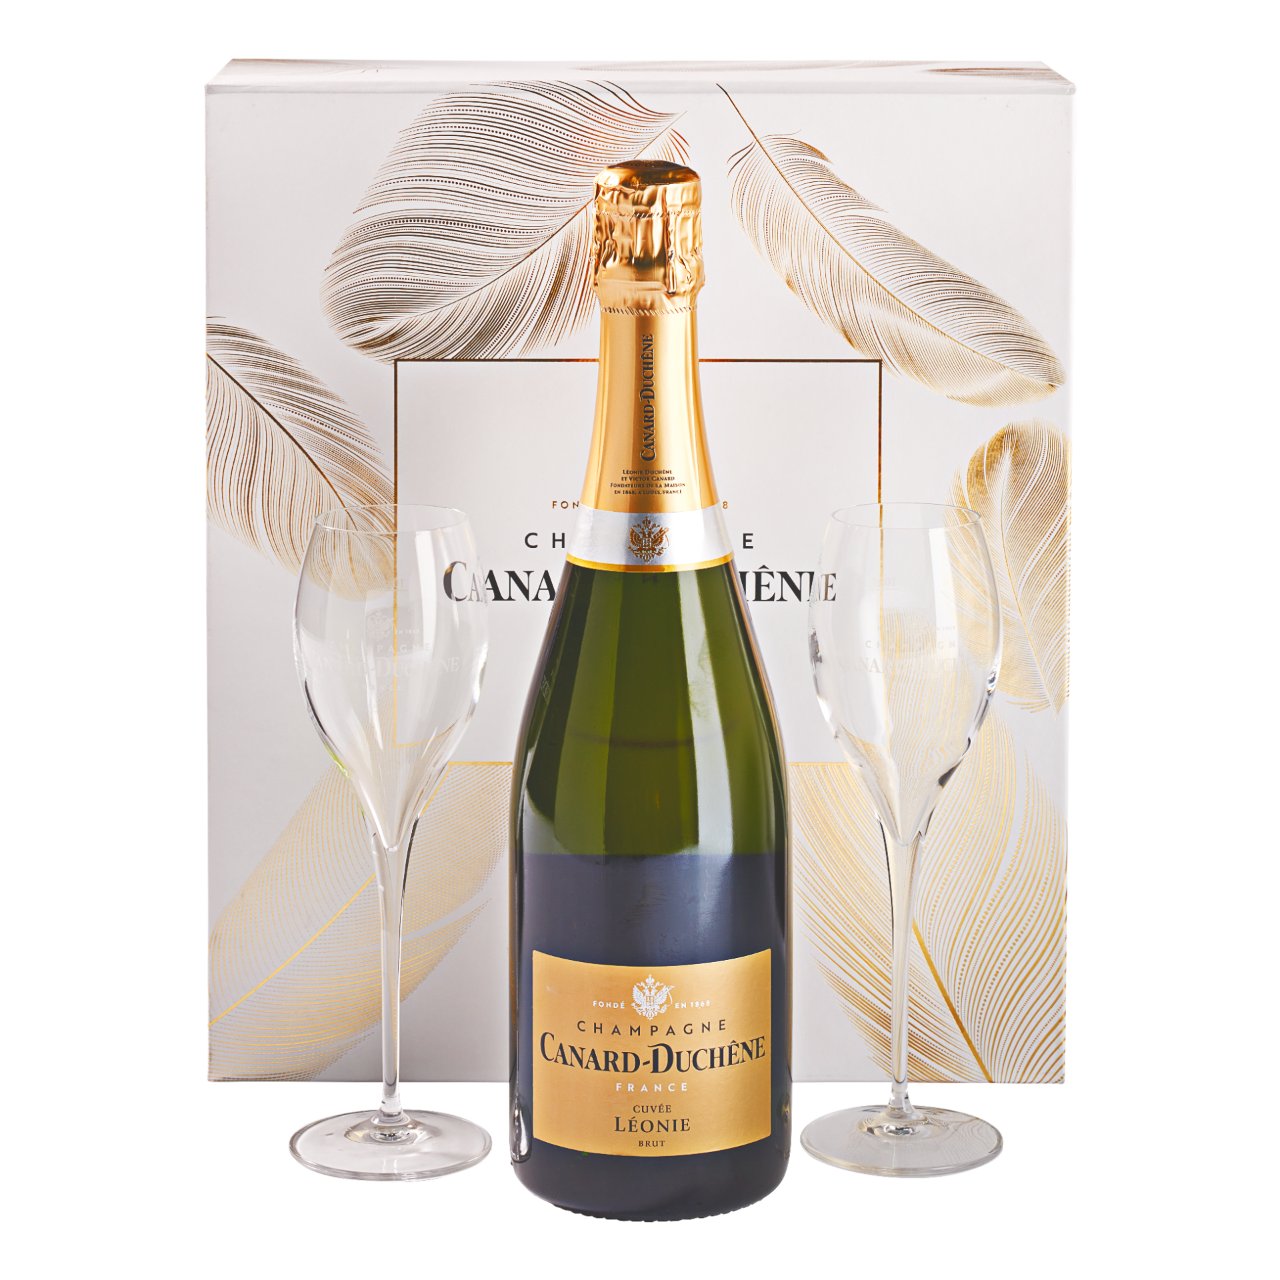 Kosten vrouwelijk Handelsmerk Canard Duchène Champagne Brut Champagne Frankrijk in luxe  geschenkverpakking met 2 glazen kopen? | Gratis verzending vanaf € 50,- |  Wijnkeuze-online.nl